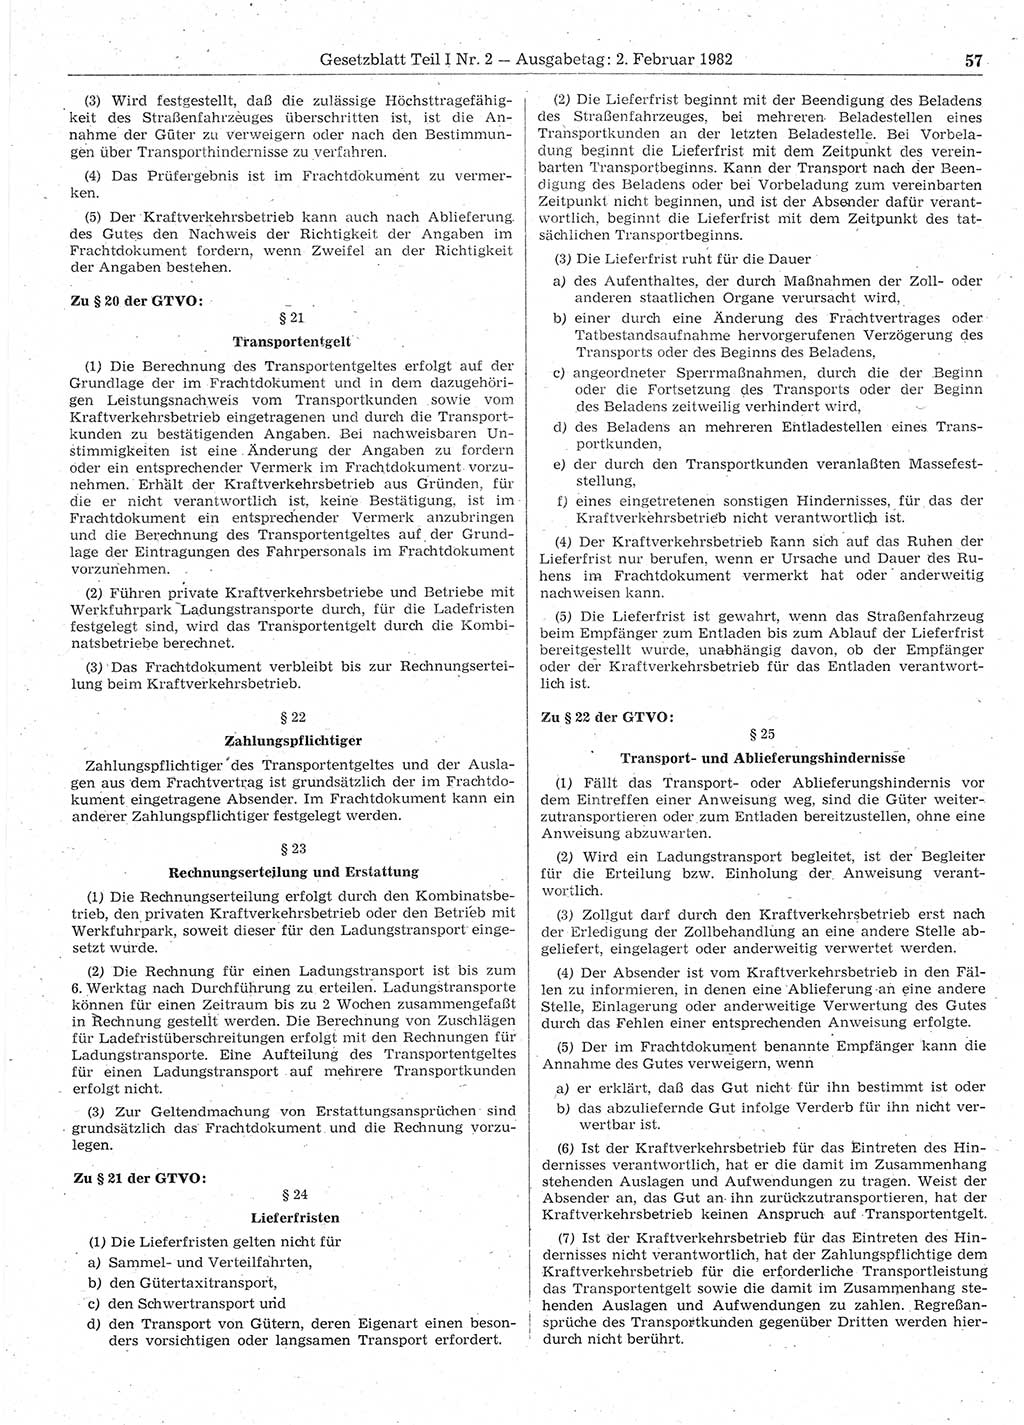 Gesetzblatt (GBl.) der Deutschen Demokratischen Republik (DDR) Teil Ⅰ 1982, Seite 57 (GBl. DDR Ⅰ 1982, S. 57)